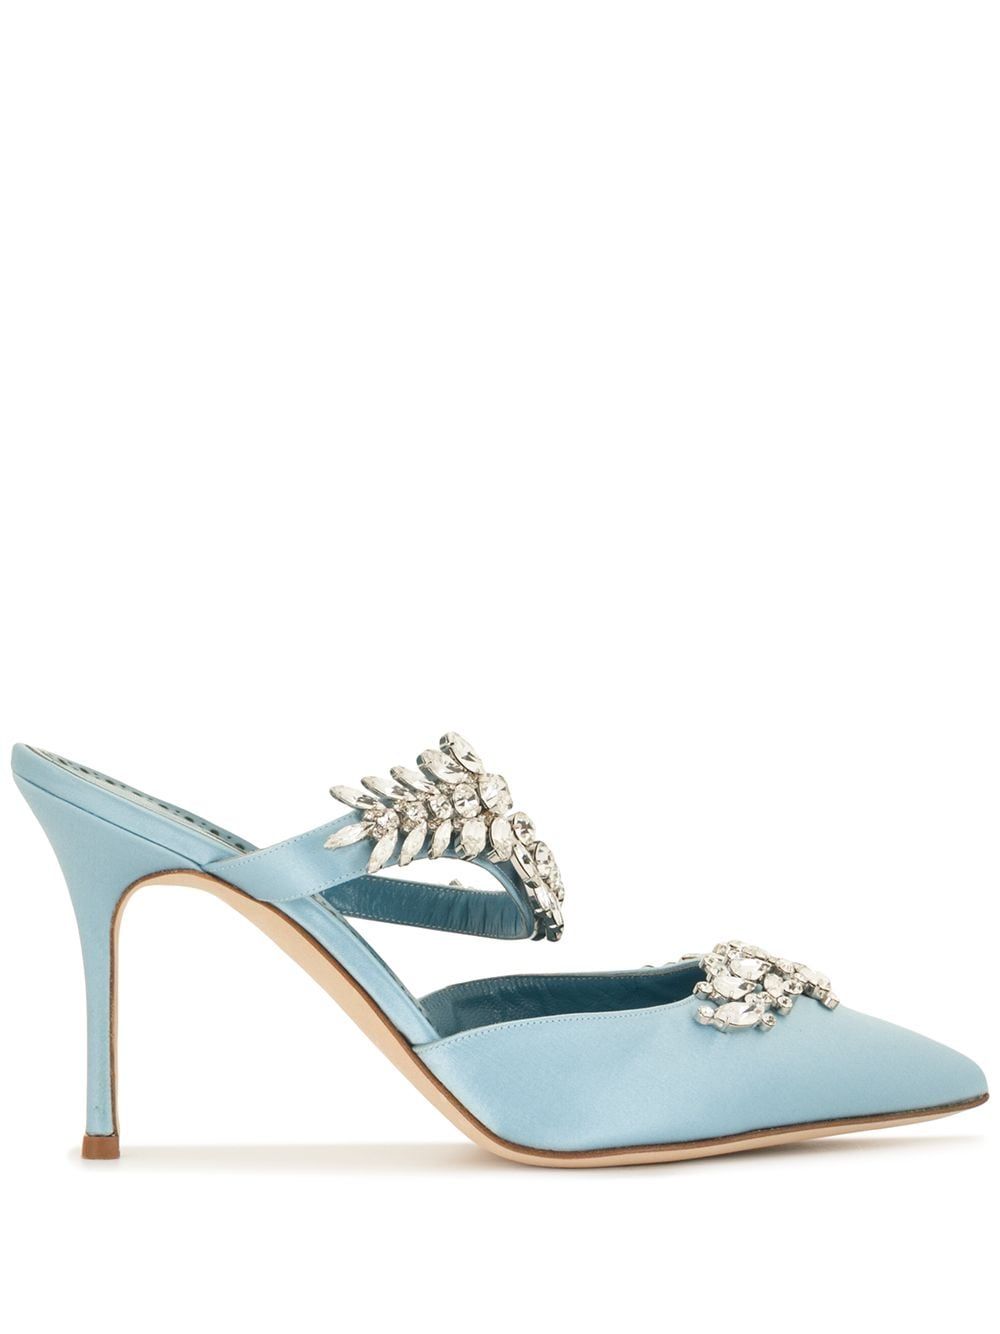 Buy > light blue low heel wedding shoes > in stock